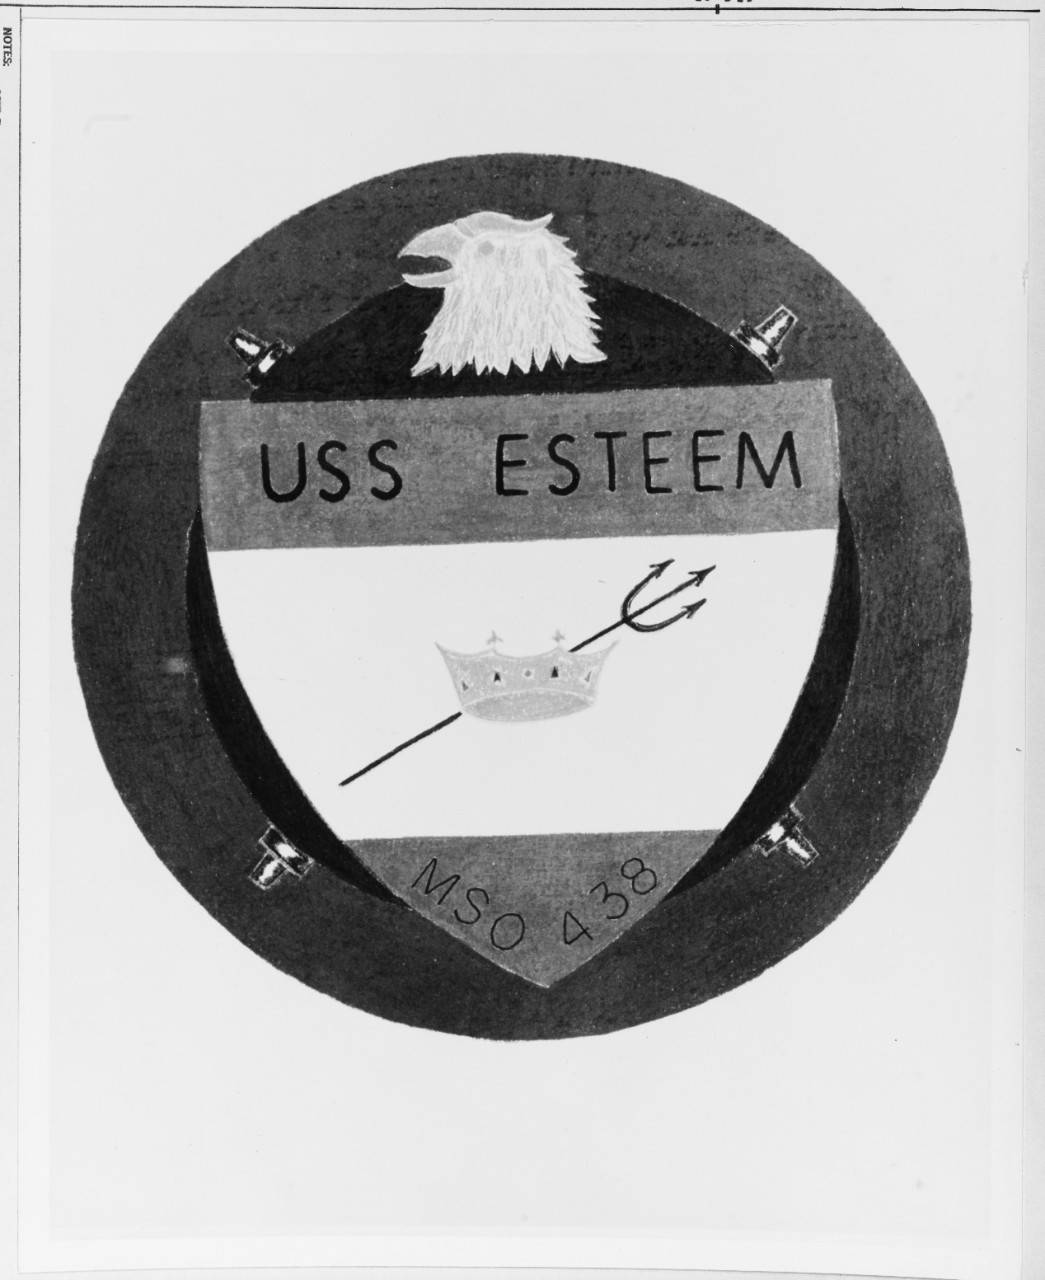 Insignia: USS ESTEEM (MSO-438)